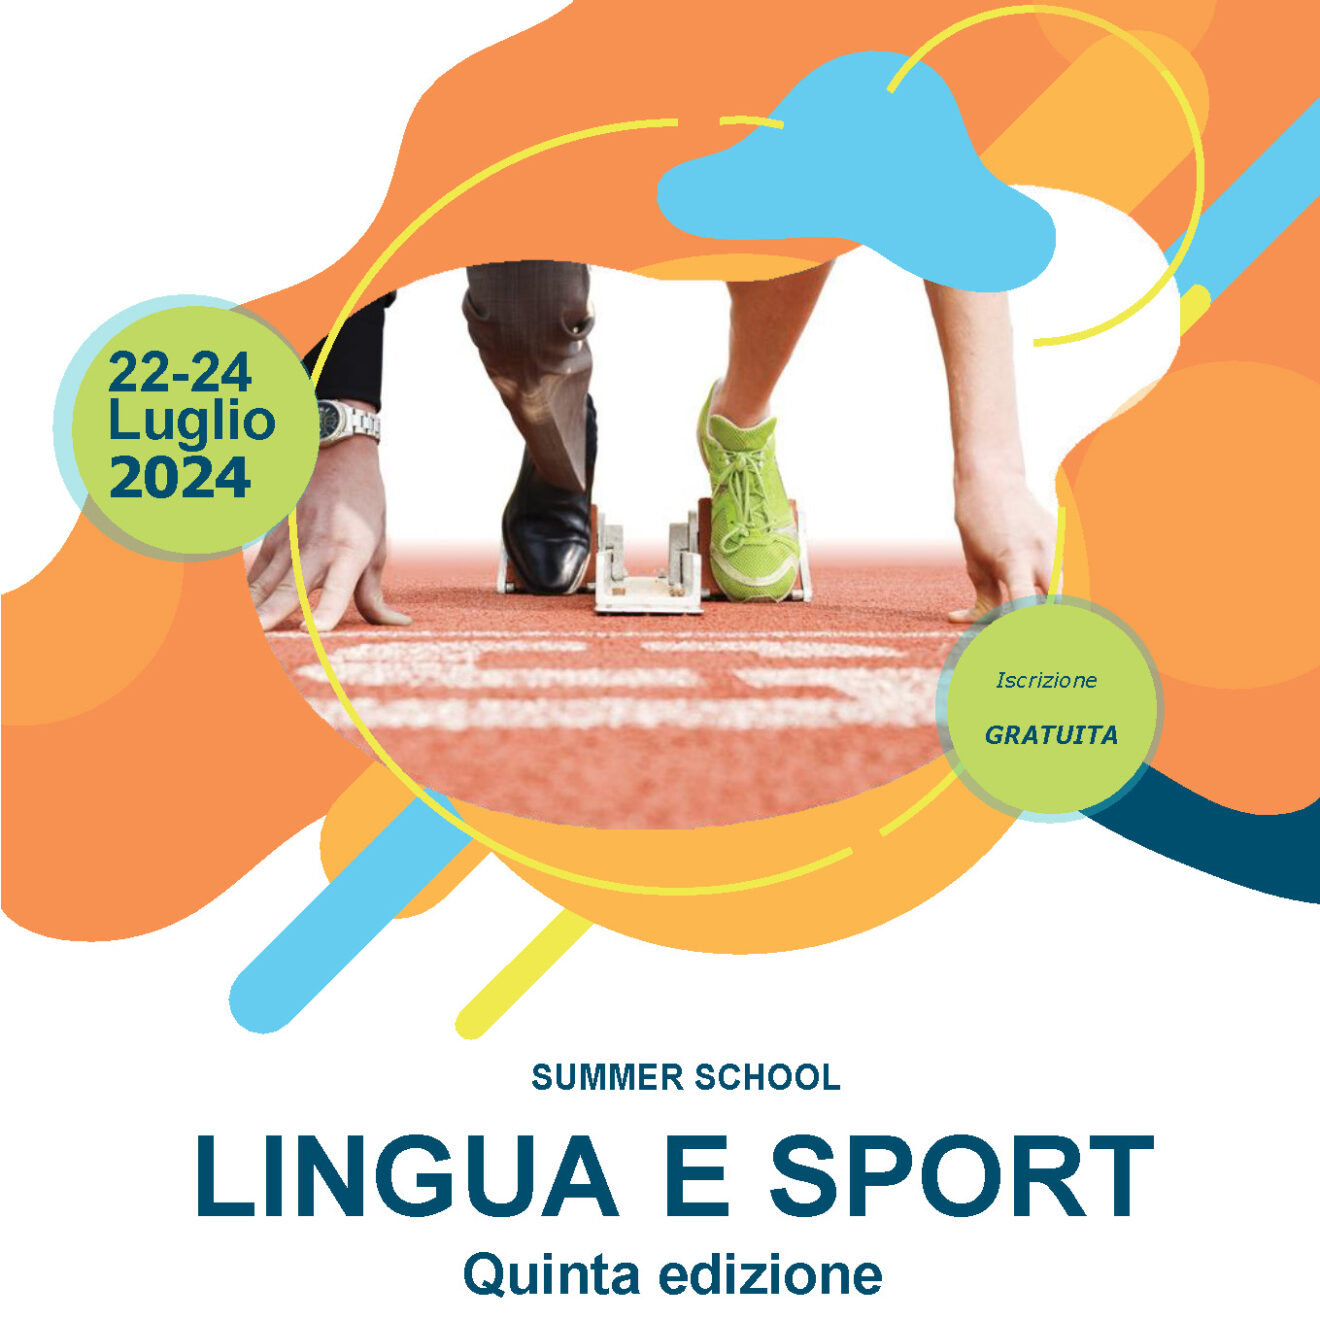 22-24/7/2024 - Summer School Lingua e Sport IV edizione - iscrizioni entro il 7 luglio 2024